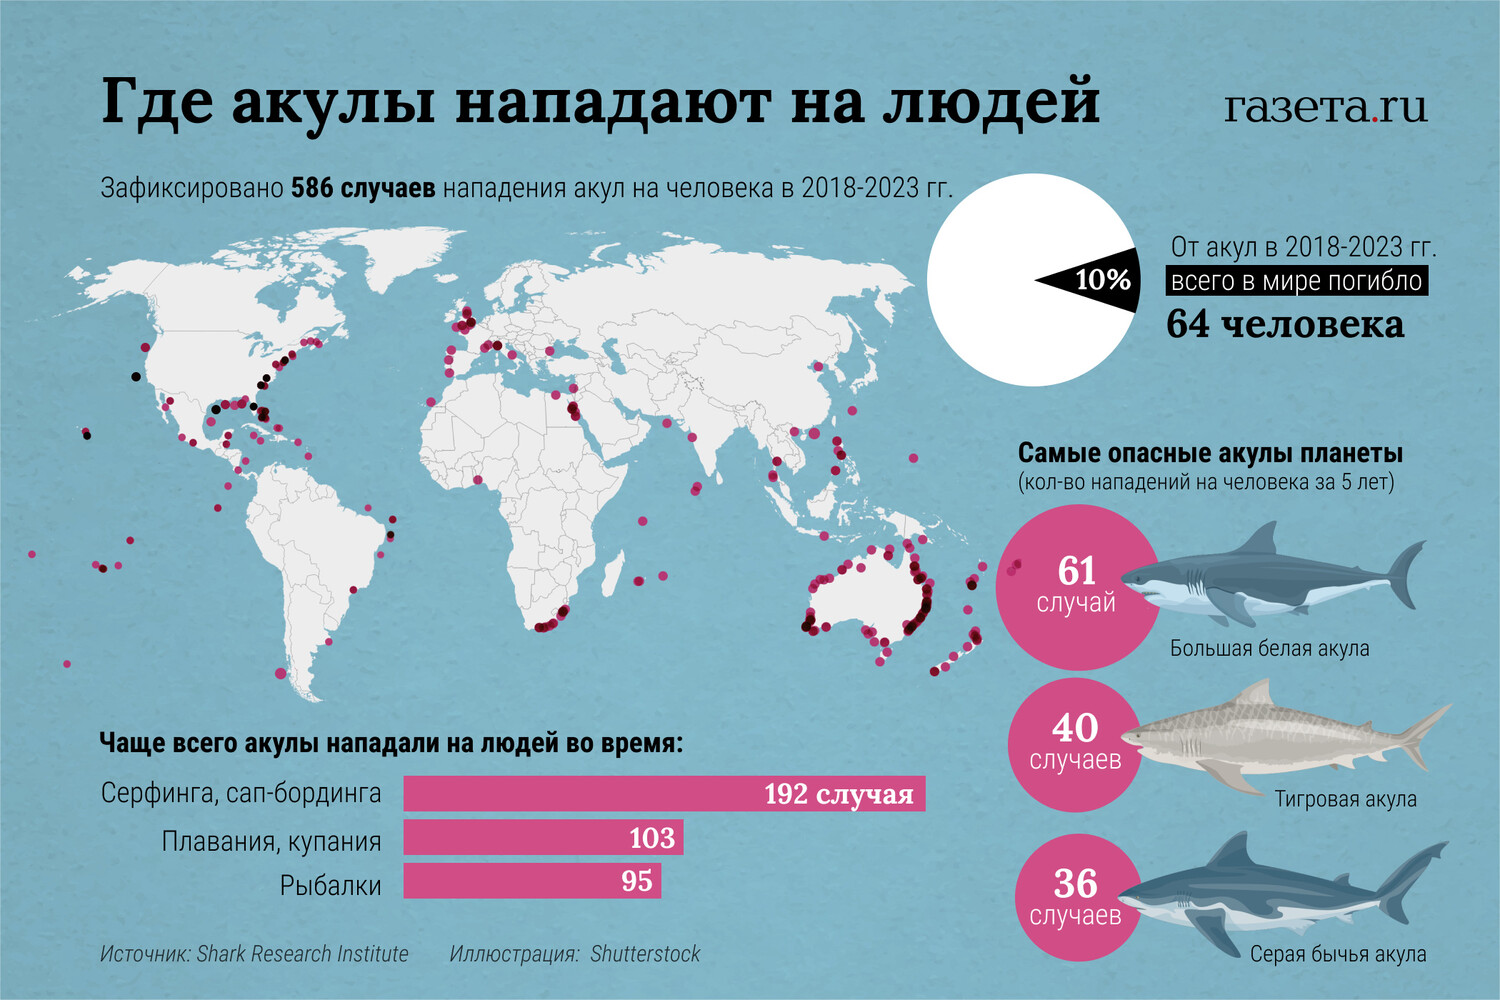 Статистика нападения акул. Карта нападения акул. Карта нападения акул на людей в мире. Статистика нападения акул в мире. Карта нападения акул в мире.